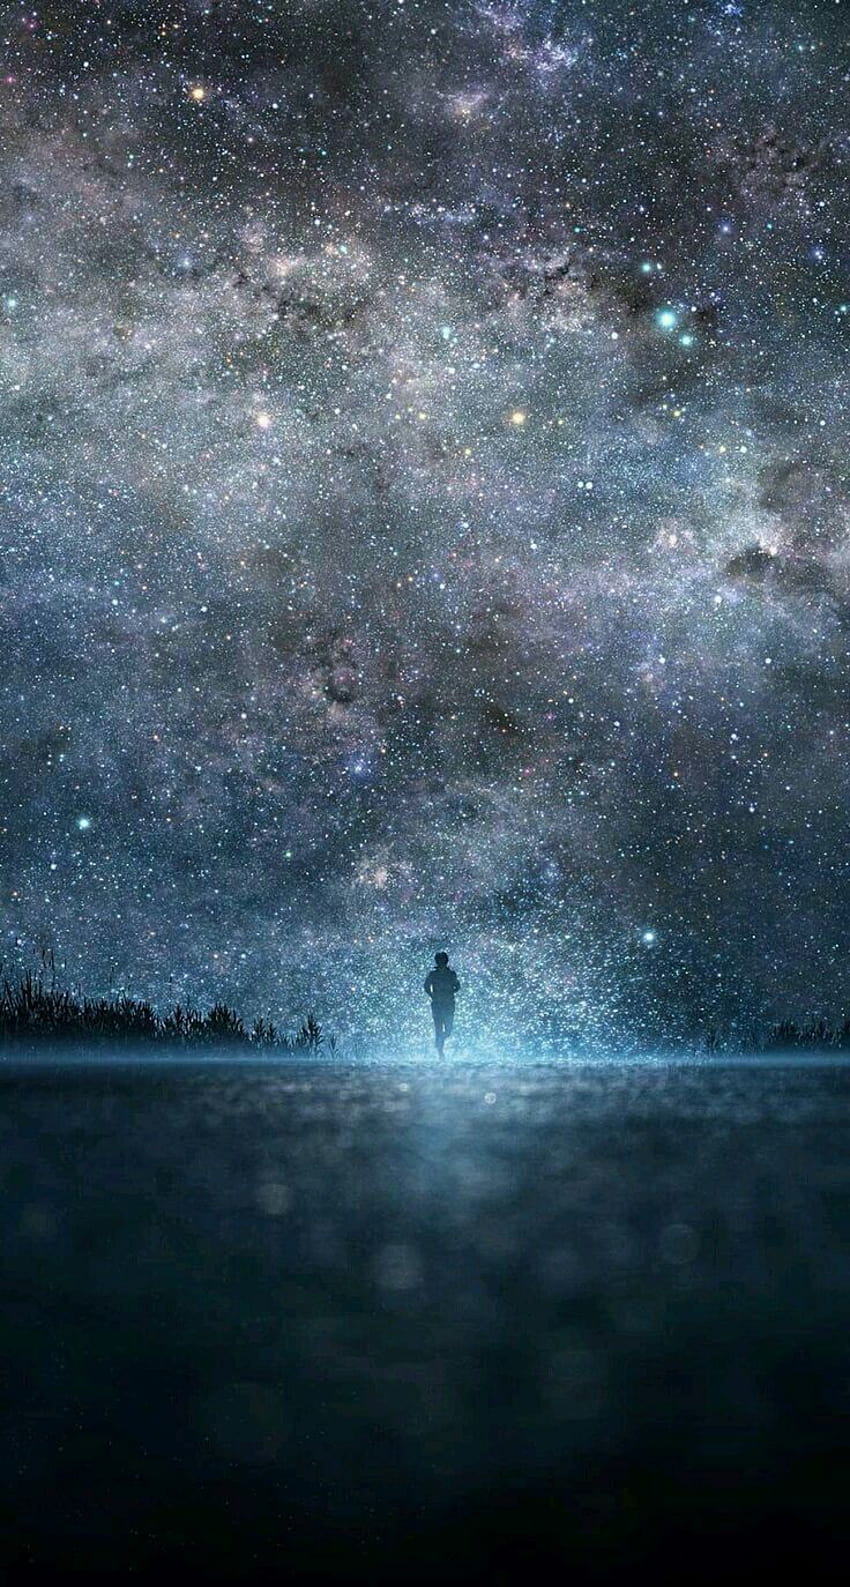 Bạn có bao giờ tưởng tượng được diện mạo của Dải Ngân Hà trên bầu trời đêm đầy sao? Hình ảnh Milky Way sẽ khiến bạn cảm thấy như đang chạm tay vào vũ trụ. Hãy đắm mình trong vẻ đẹp không thể tả nổi của Dải Ngân Hà và cảm nhận sự vĩnh cửu của vũ trụ.